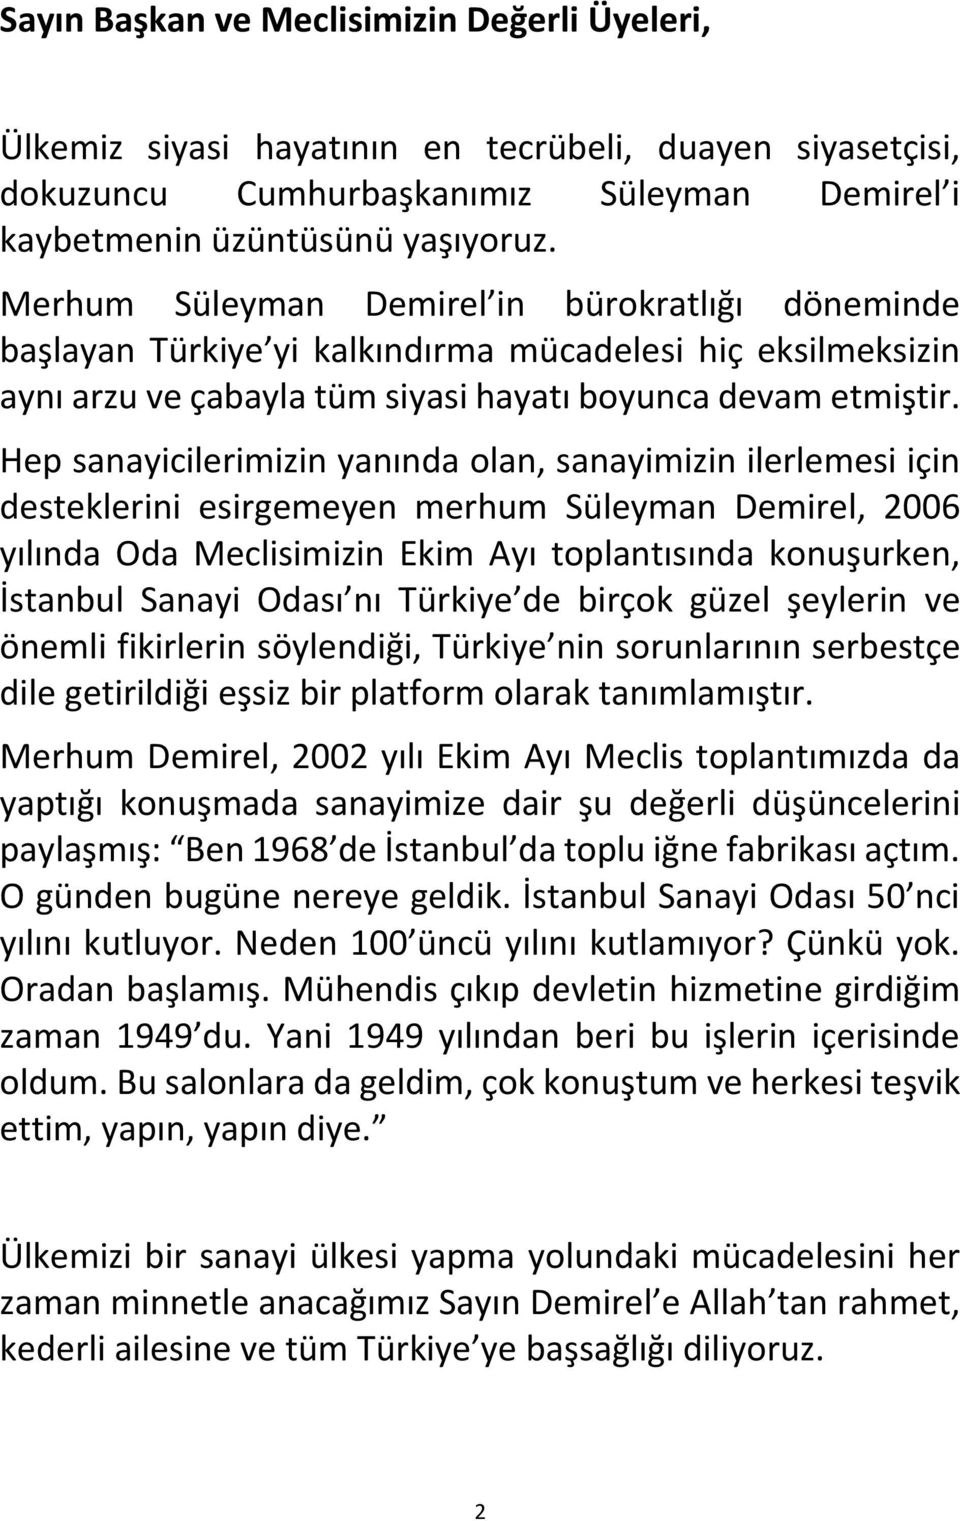 Hep sanayicilerimizin yanında olan, sanayimizin ilerlemesi için desteklerini esirgemeyen merhum Süleyman Demirel, 2006 yılında Oda Meclisimizin Ekim Ayı toplantısında konuşurken, İstanbul Sanayi